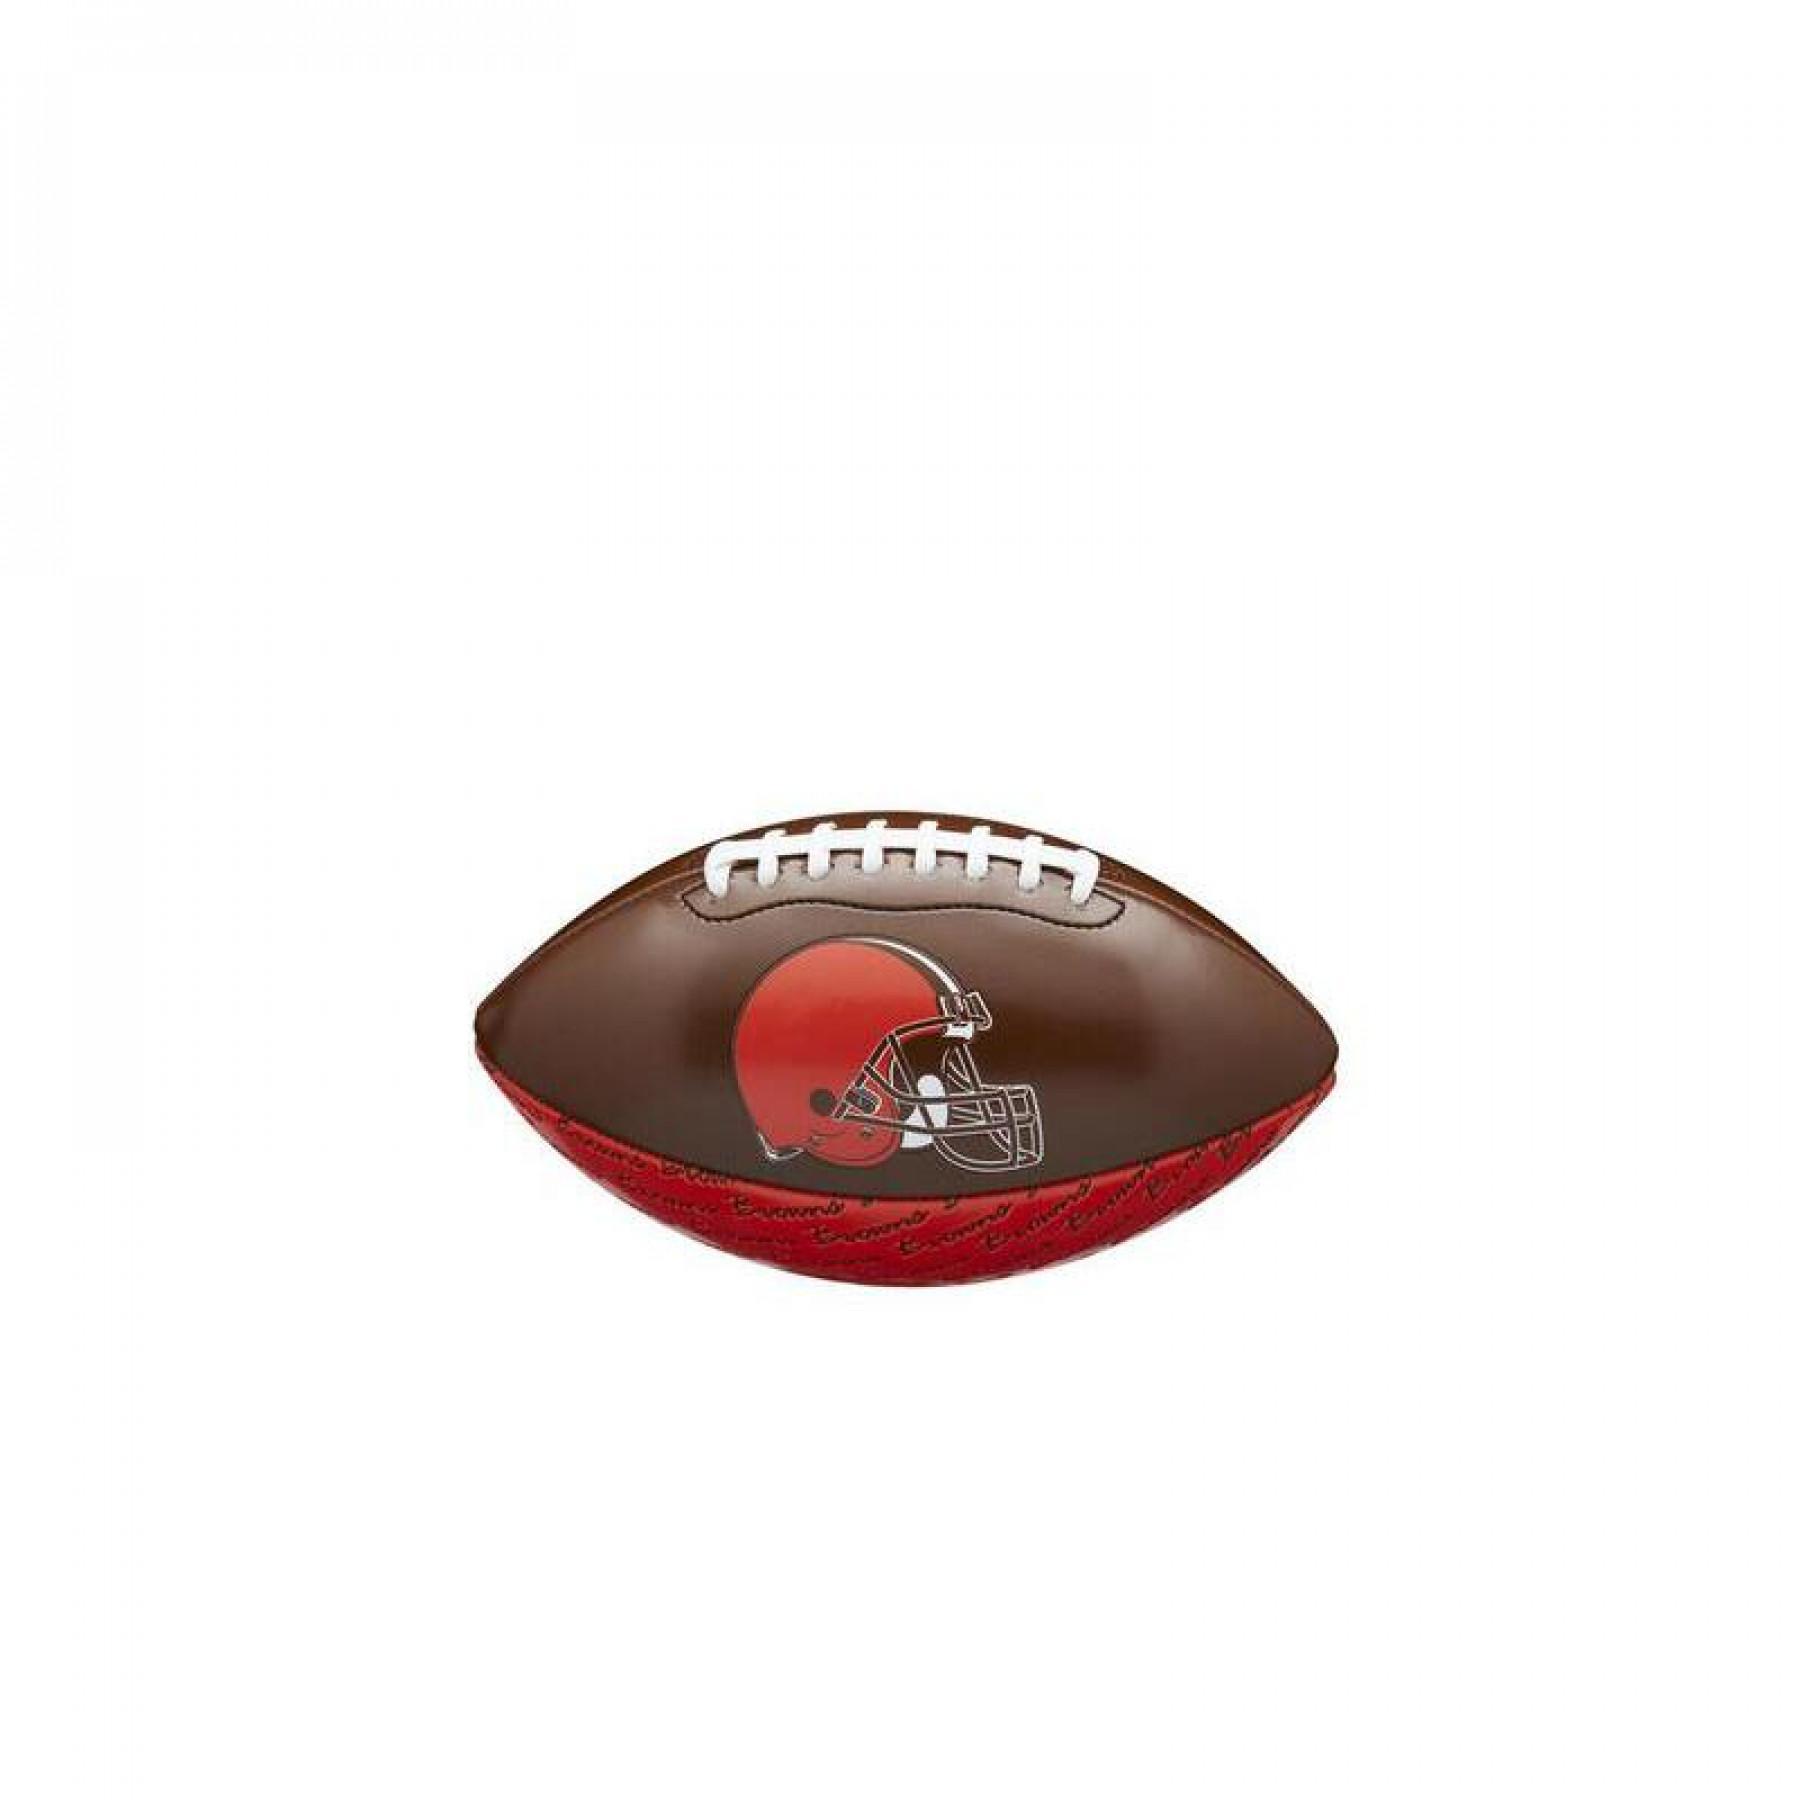 Mini balón infantil nfl Cleveland Browns